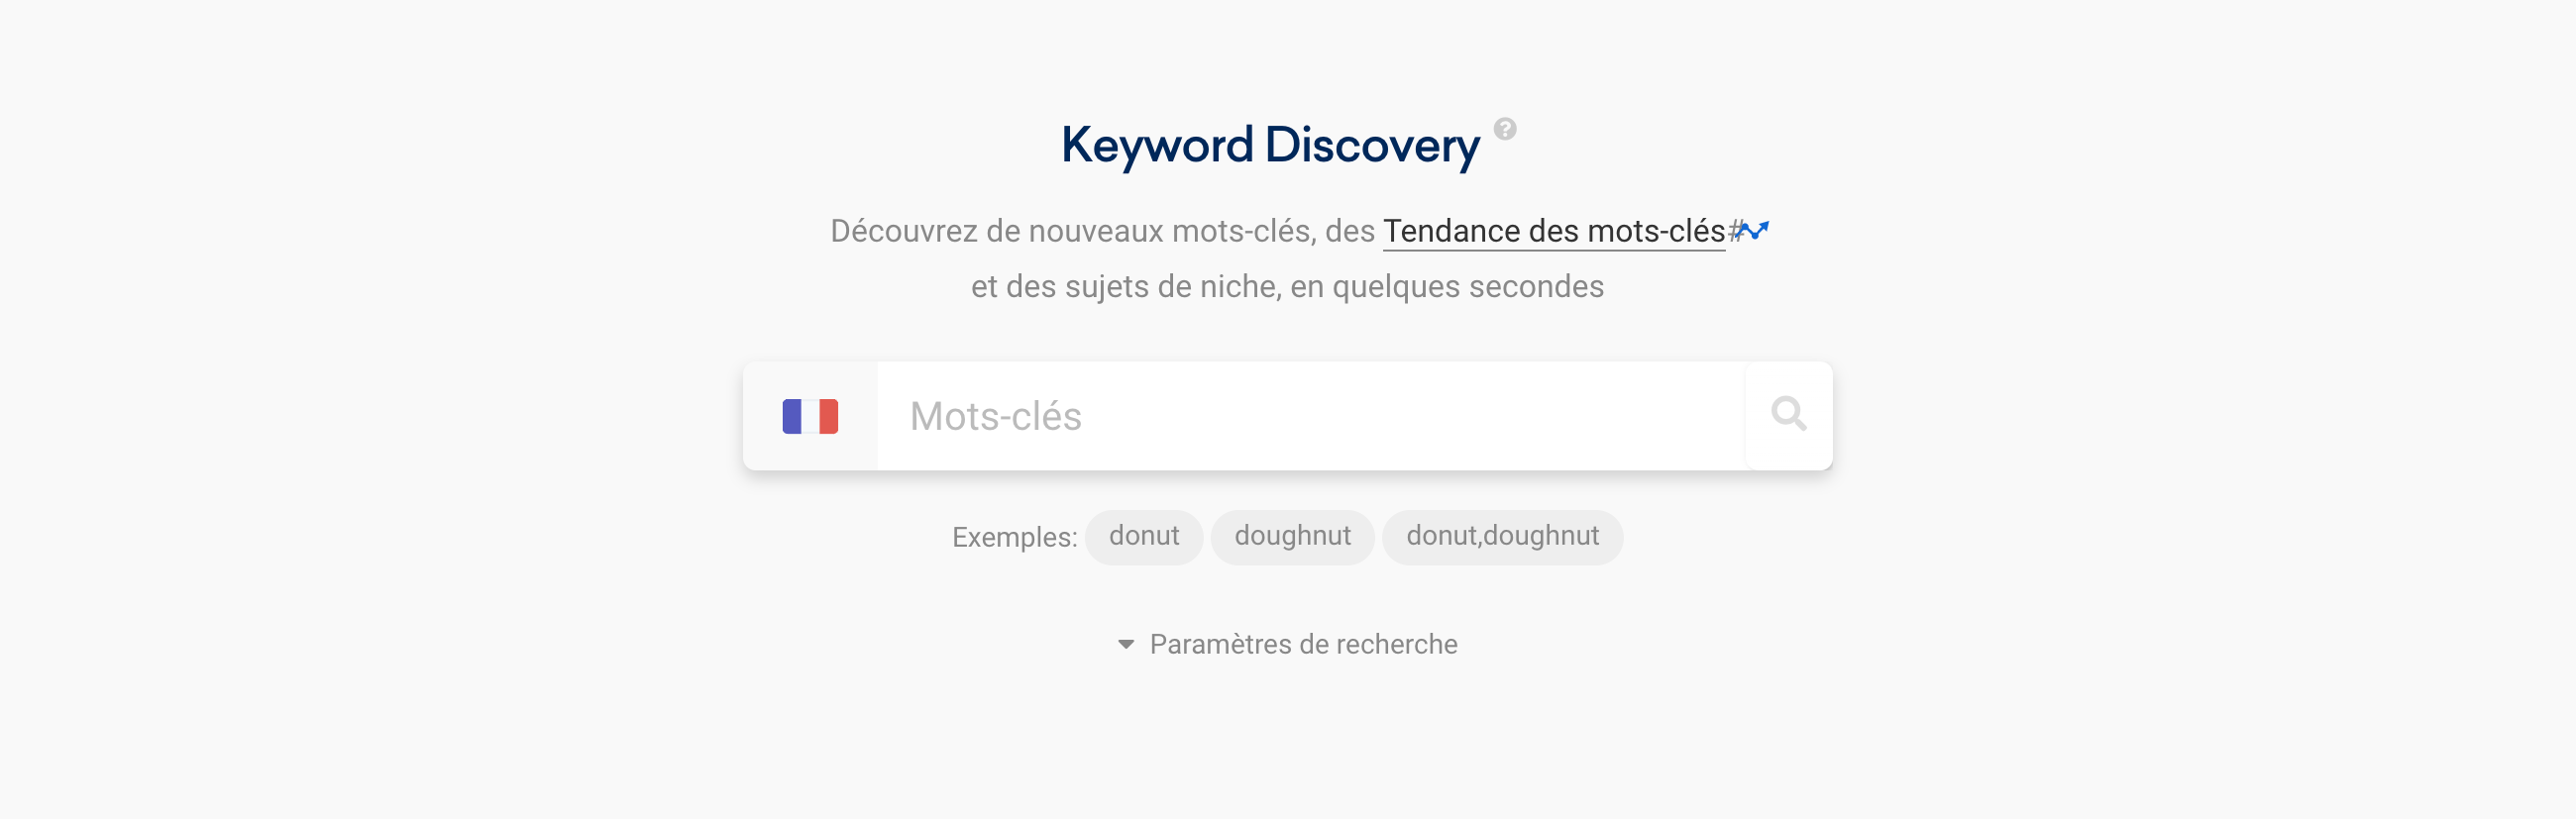 Accéder à l'outil gratuit Keyword Discovery depuis la toolbox SISTRIX